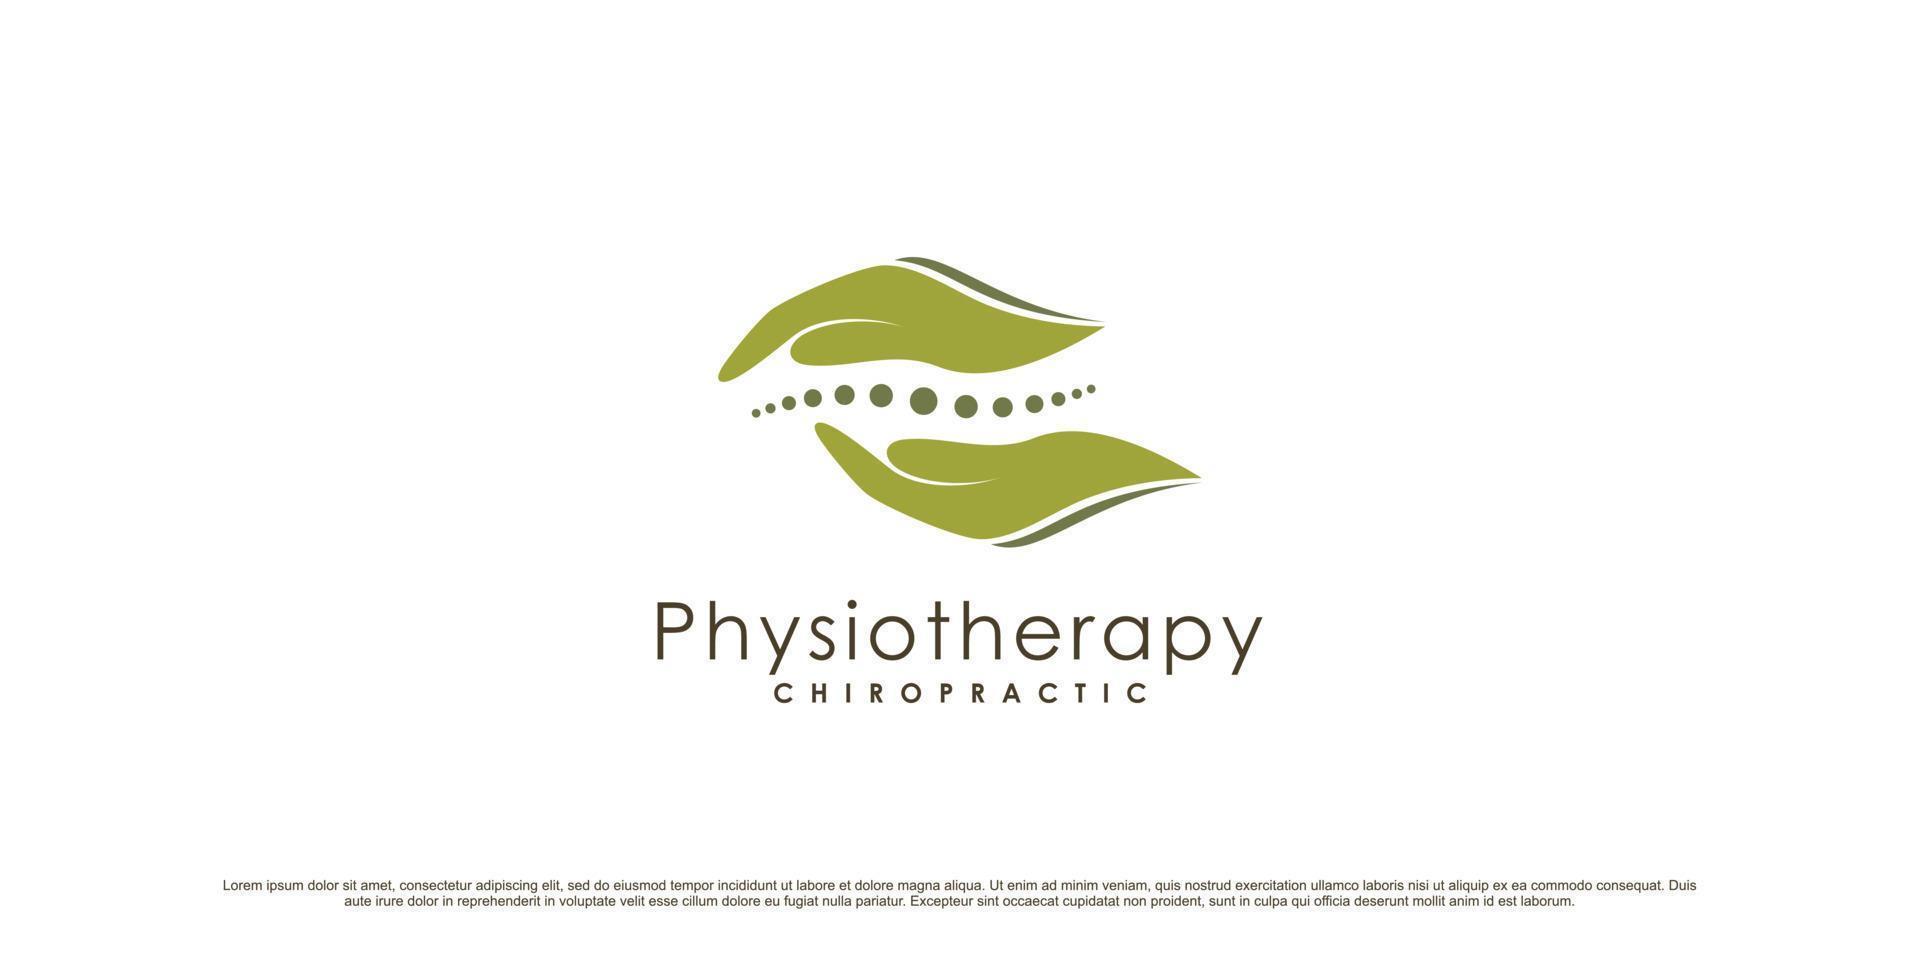 Physiotherapie-Logo-Design für Gesundheitswesen und Medizin mit kreativem, modernem Konzept-Premium-Vektor vektor